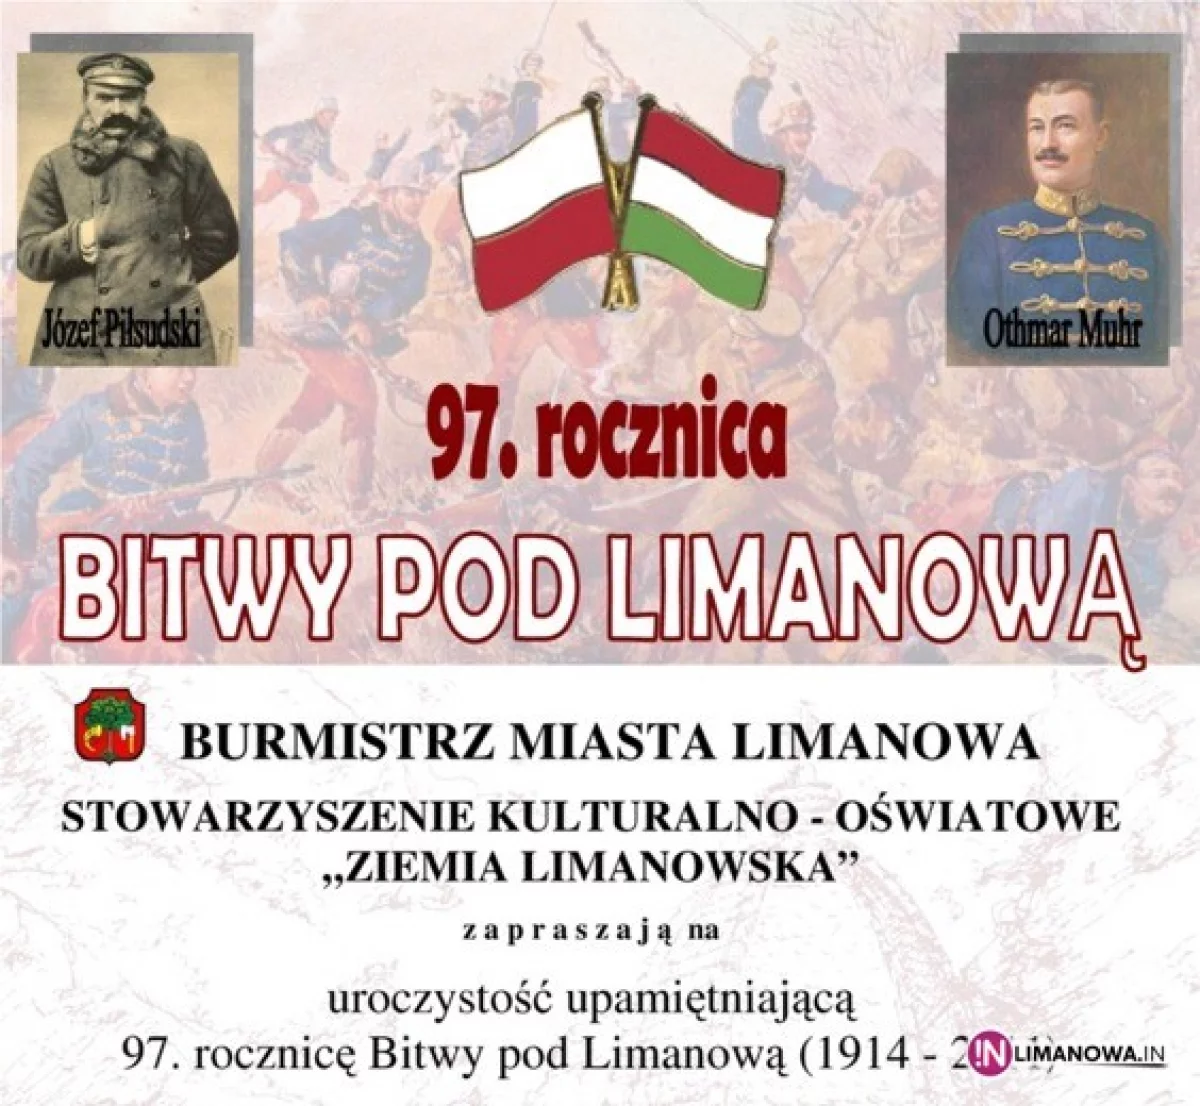 97. rocznica Bitwy pod Limanową